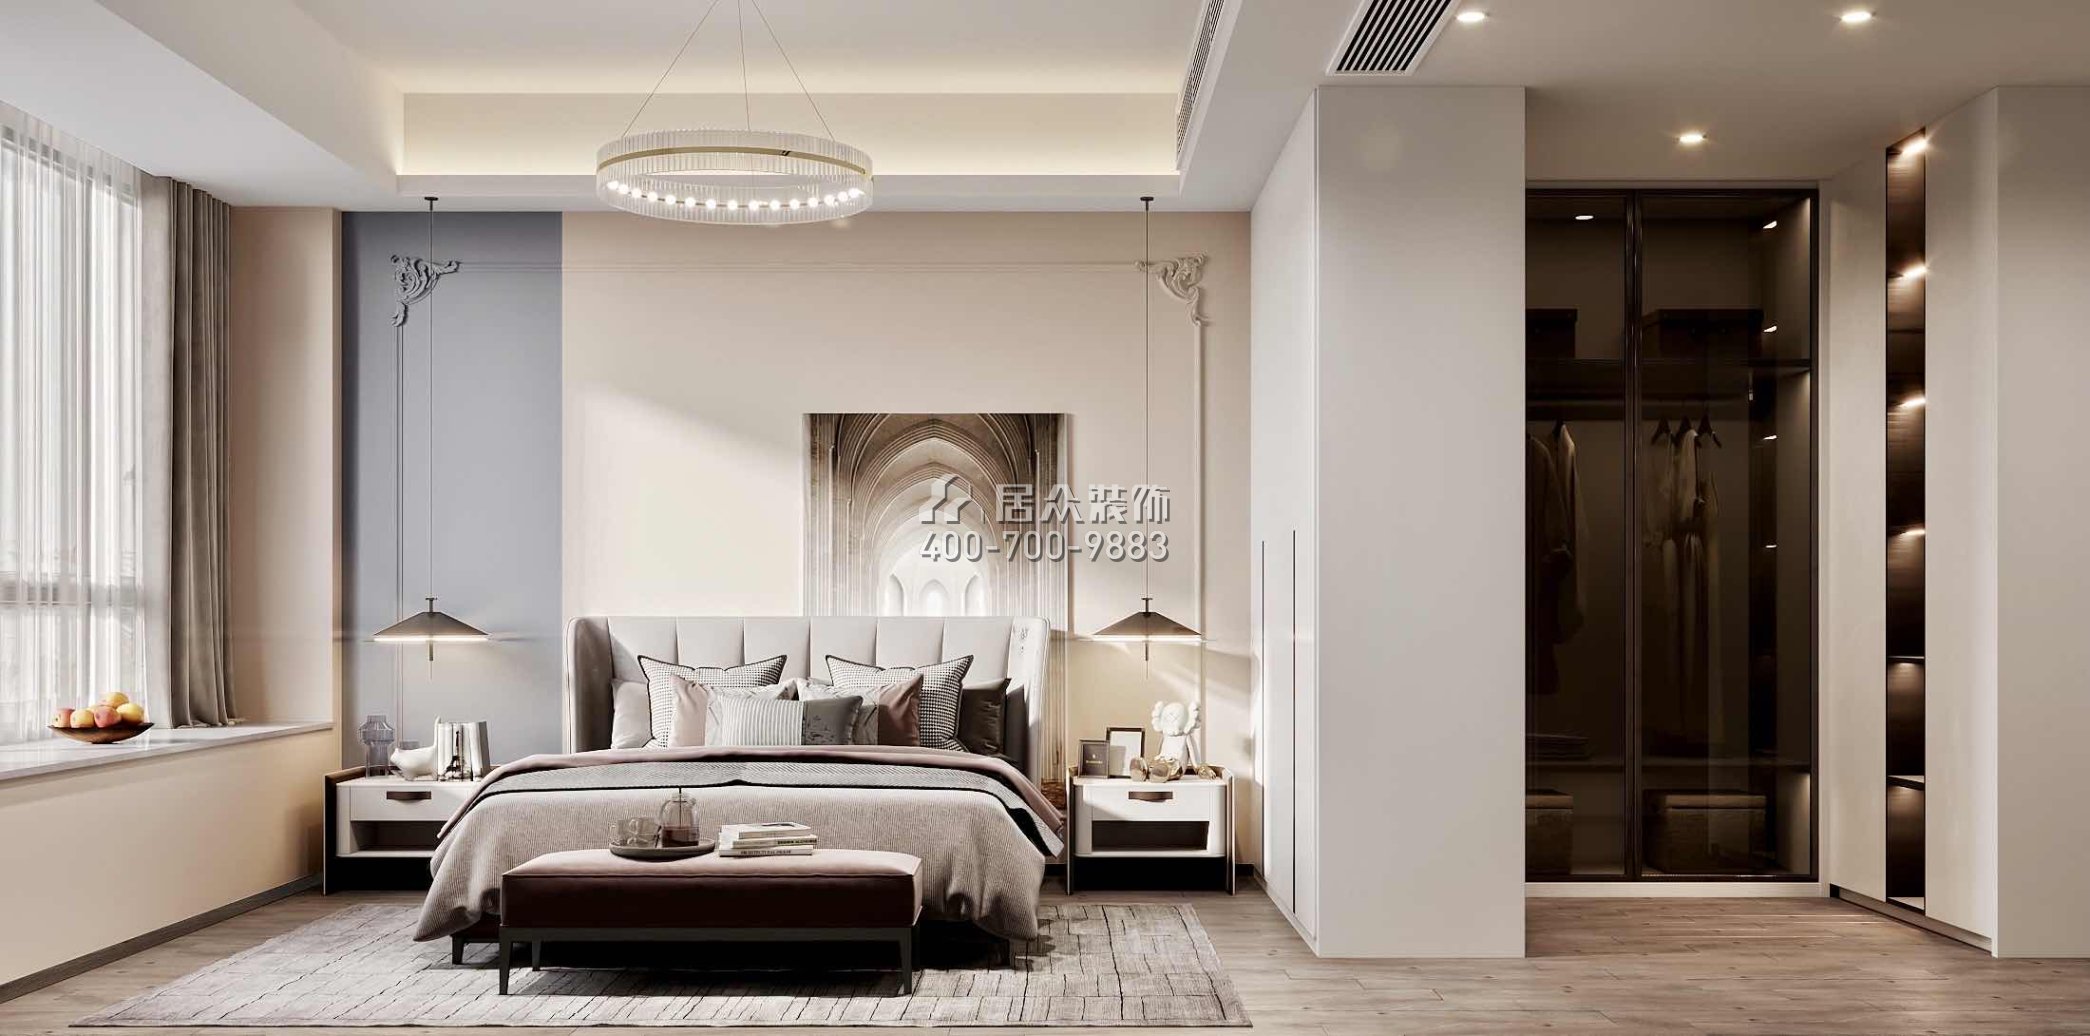 翠湖香山150平方米现代简约风格平层户型卧室kok电竞平台效果图